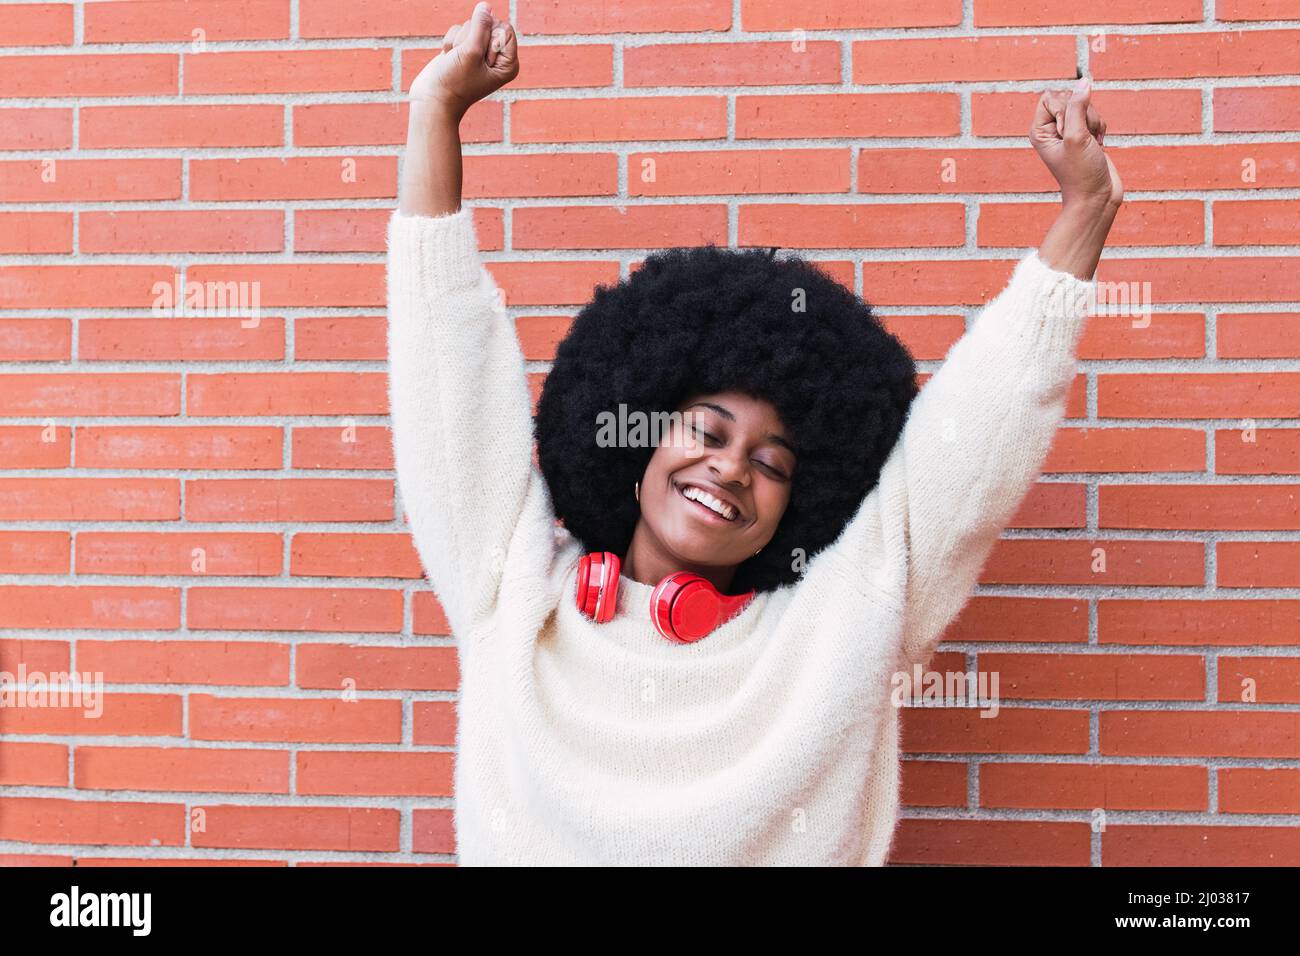 Fröhliche schwarze Frau mit roten Kopfhörern am Hals, Afro-Frisur und perfektem weißen Lächeln tanzen, Spaß haben und lächeln mit geschlossenen Augen. Speicherplatz kopieren Stockfoto